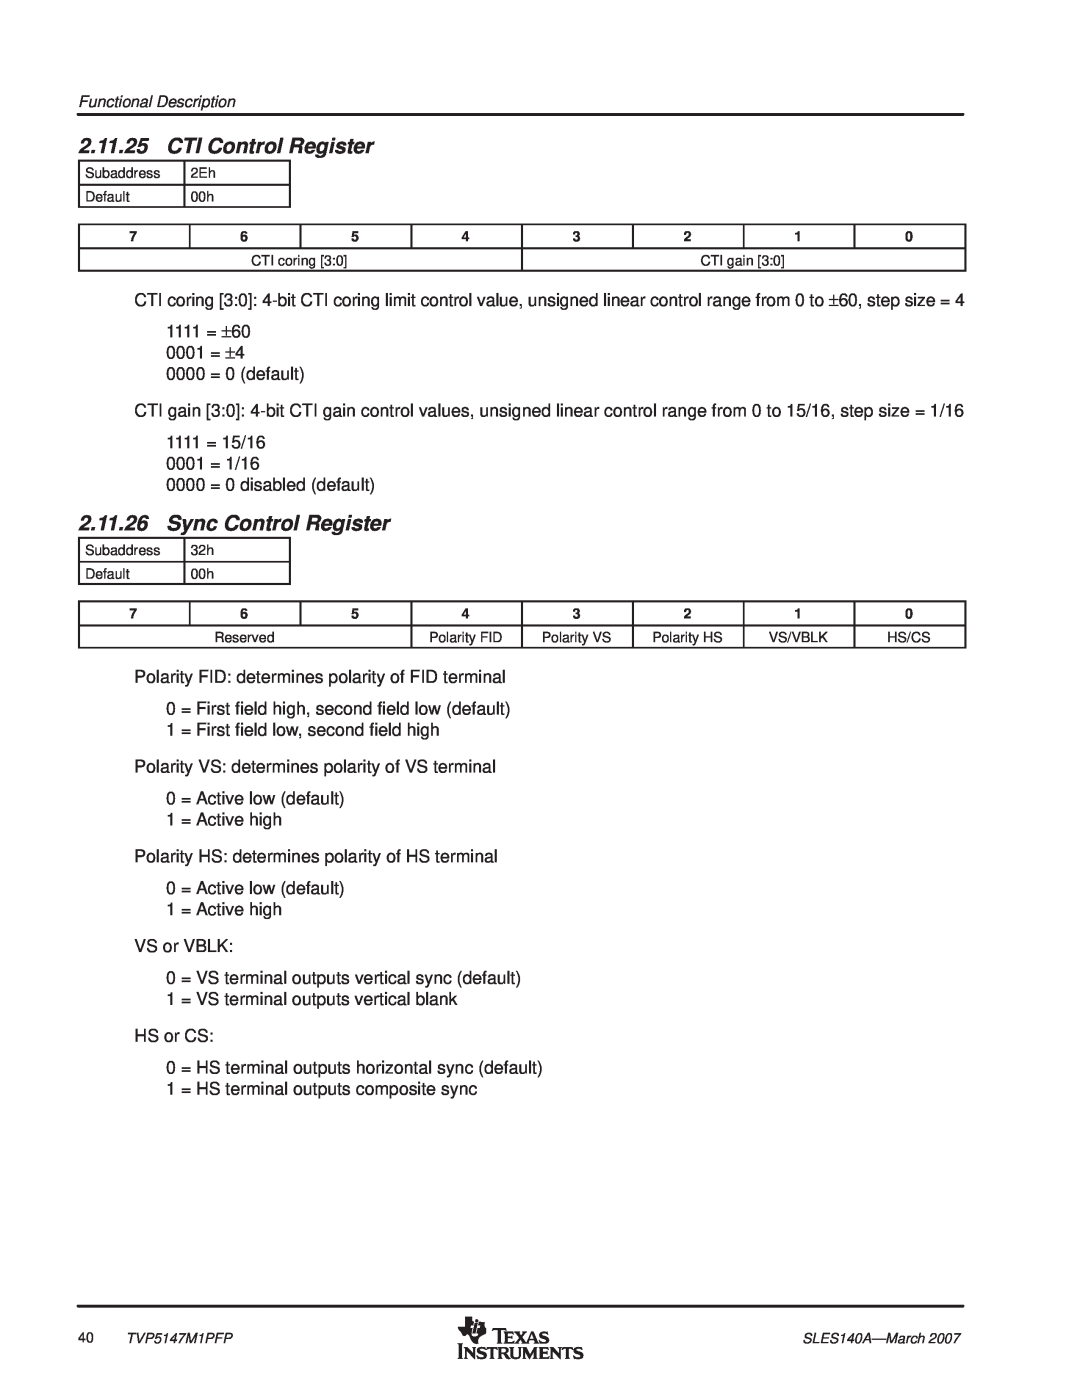 Texas Instruments TVP5147M1PFP manual CTI Control Register, Sync Control Register, 2.11.25, 2.11.26 